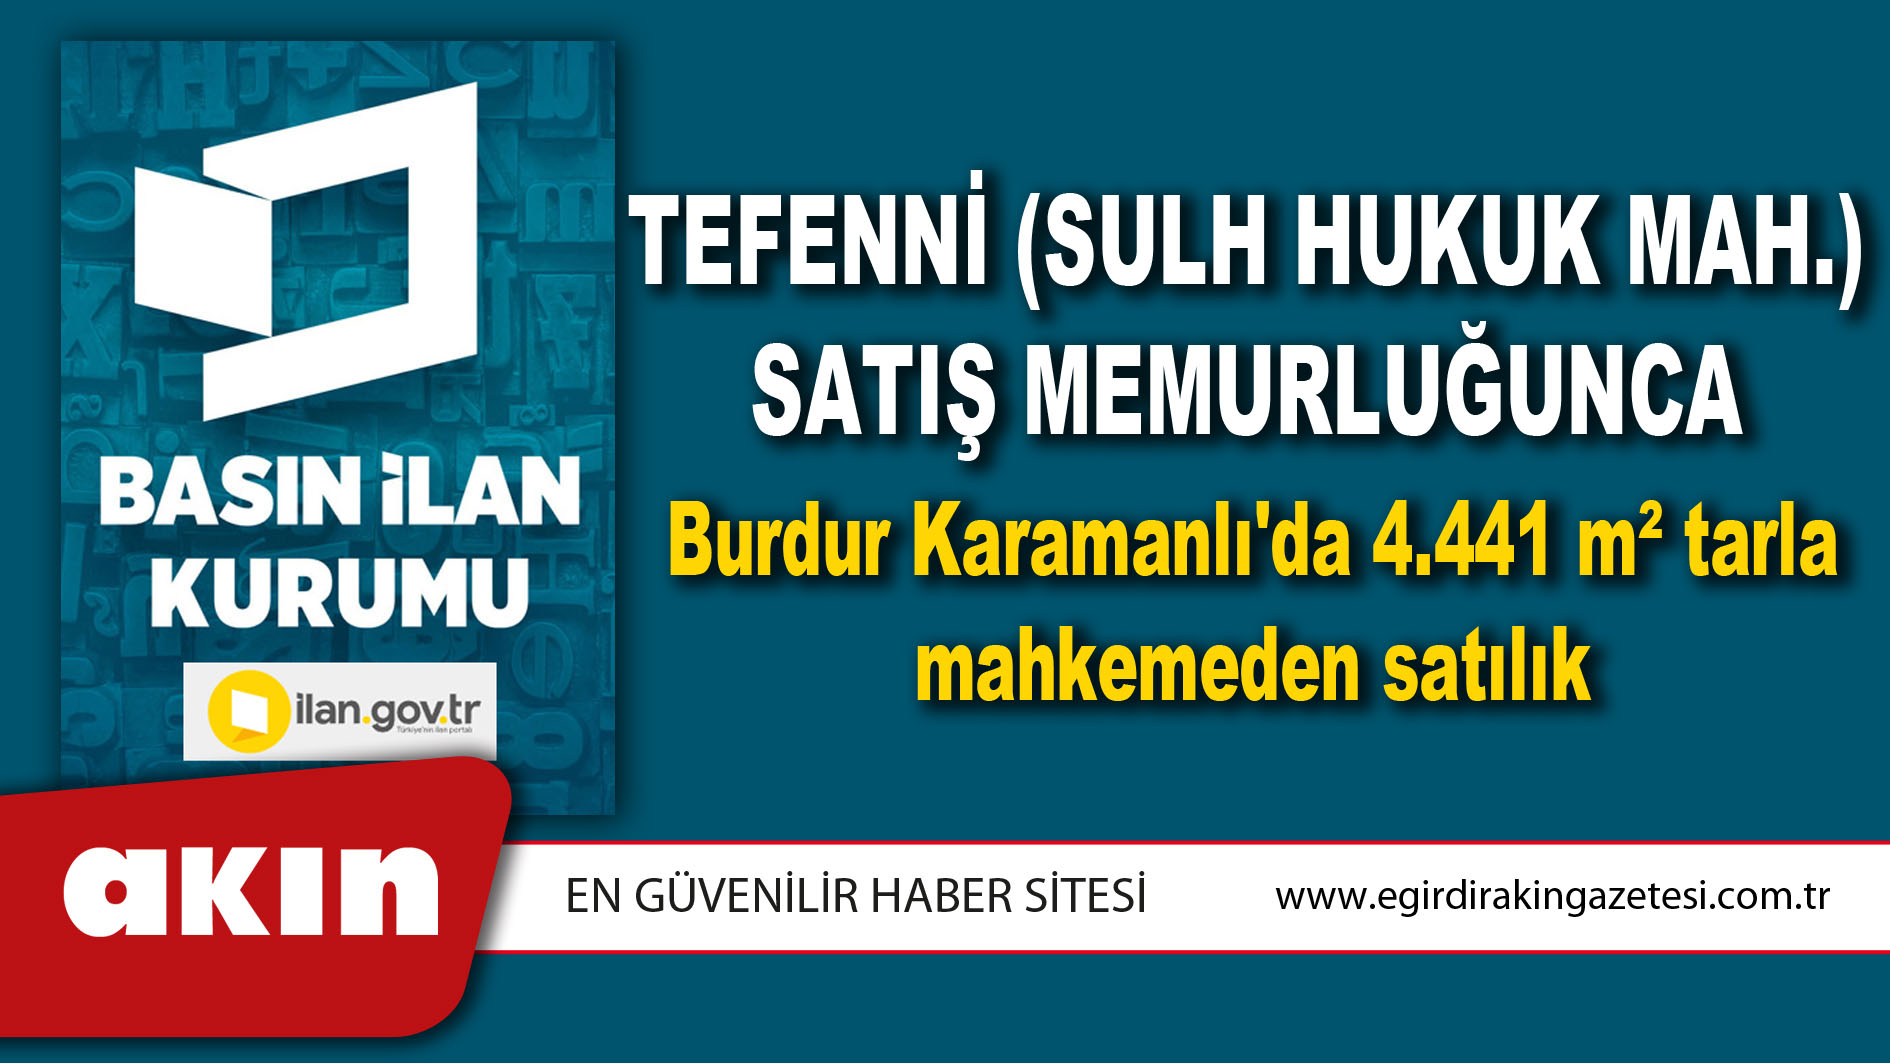 eğirdir haber,akın gazetesi,egirdir haberler,son dakika,Tefenni (Sulh Hukuk Mah.) Satış Memurluğunca Burdur Karamanlı'da 4.441 m² tarla mahkemeden satılık